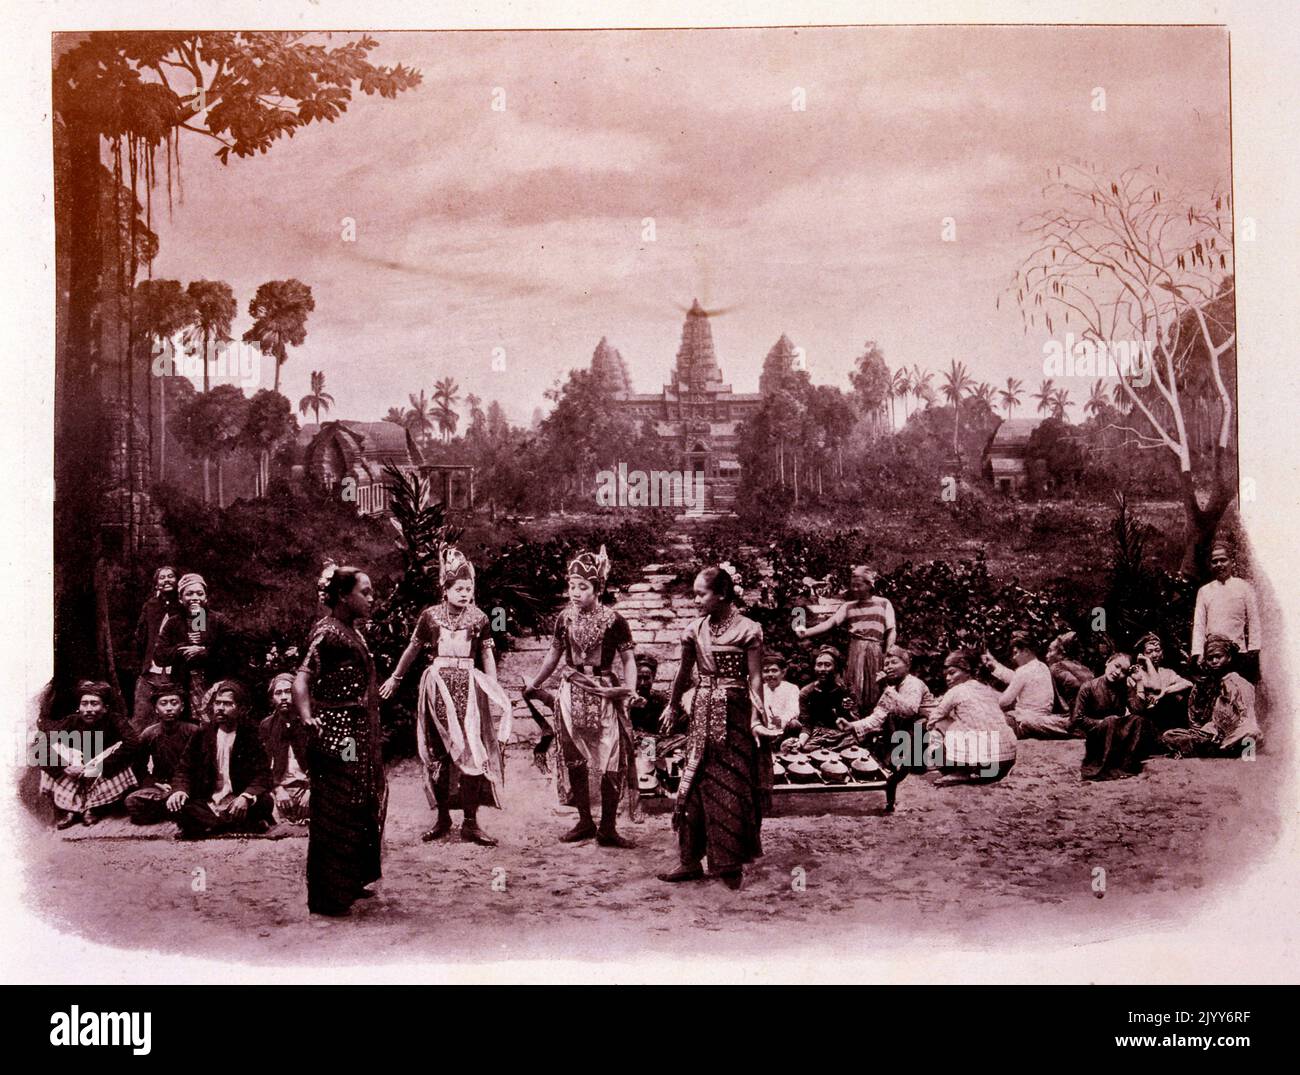 Ausstellung Universelle (Weltausstellung) Paris, 1900; Foto mit javanesischen Tänzern außerhalb der berühmten Pagode von Angkor; auch mit Darstellung des Khmer-Reiches. Stockfoto